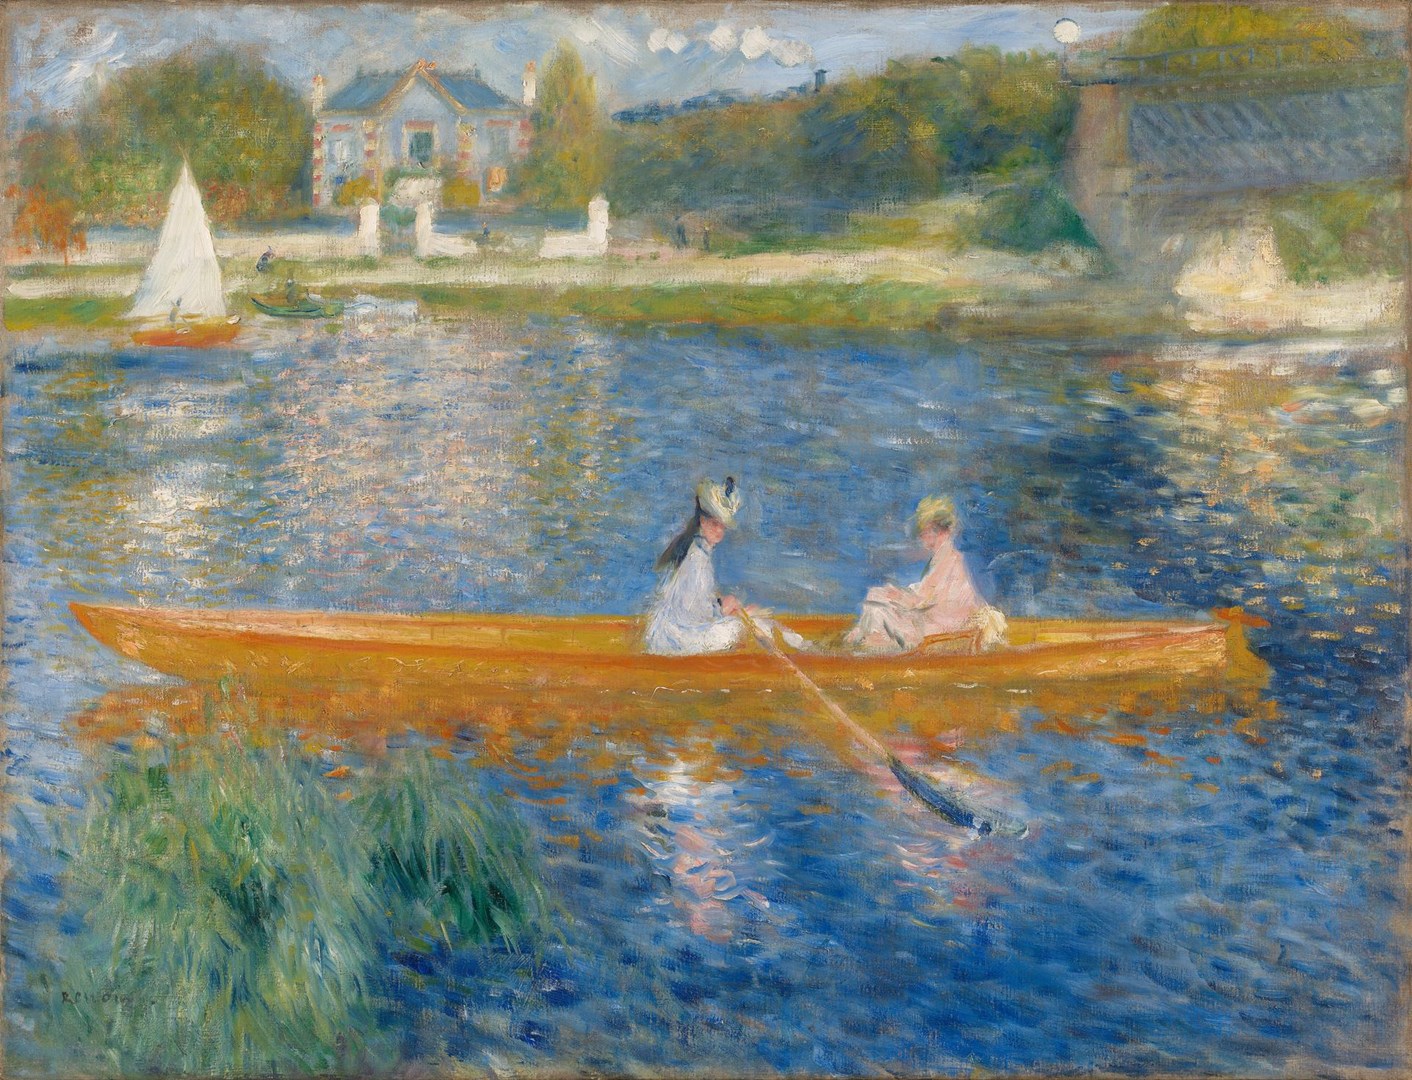 La yola (La Yole) by Pierre-Auguste Renoir - 1875 - 71 x 92 cm Galería Nacional